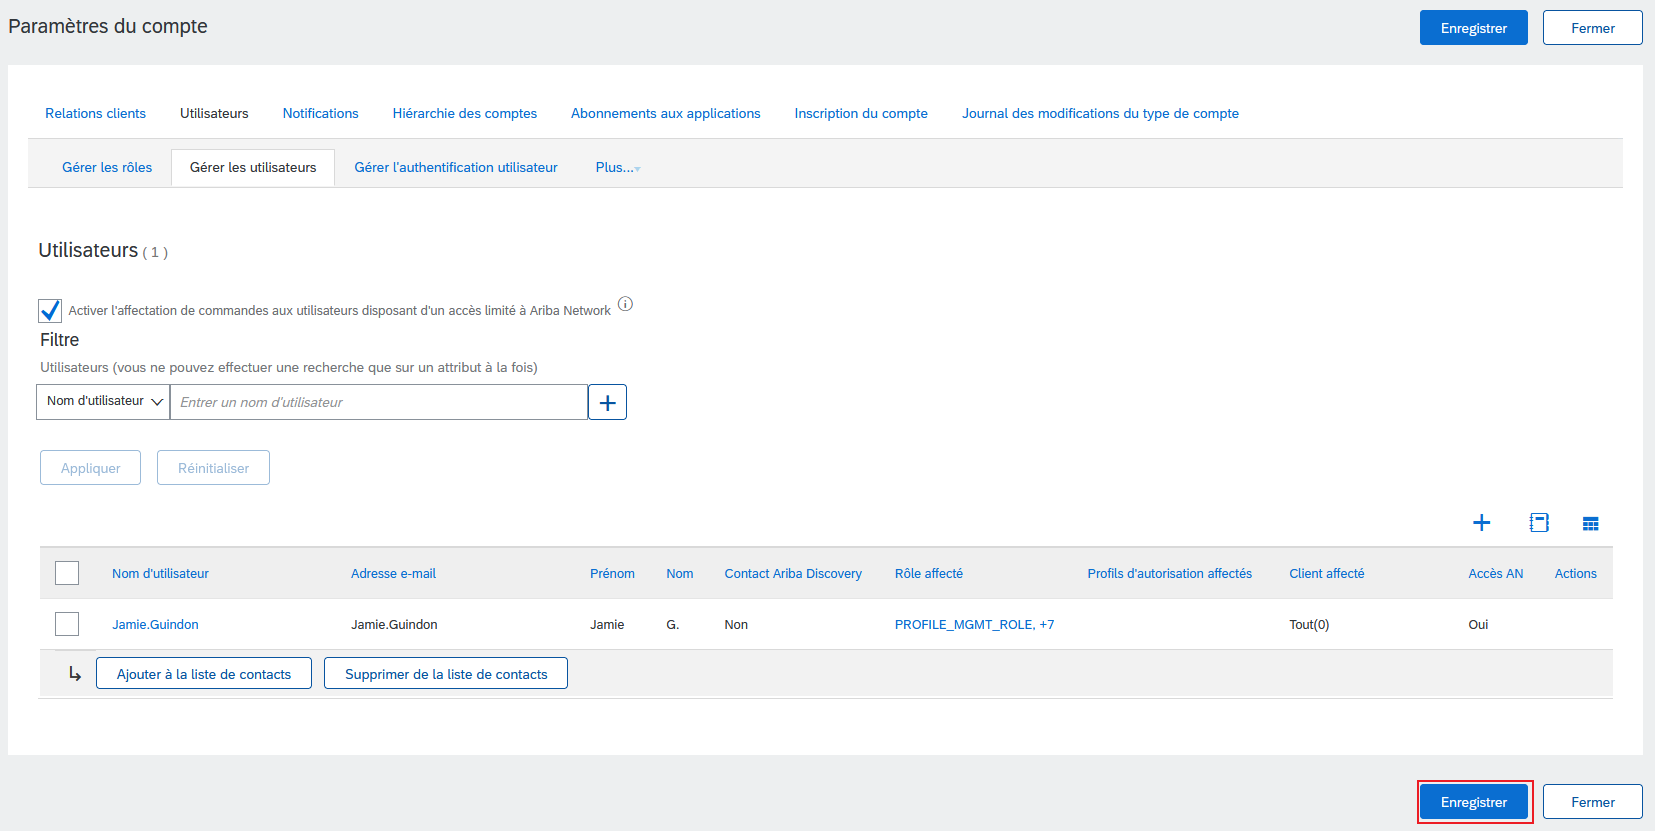 Une capture d'écran de la page des paramètres des utilisateurs, avec le bouton Enregistrer mis en évidence.